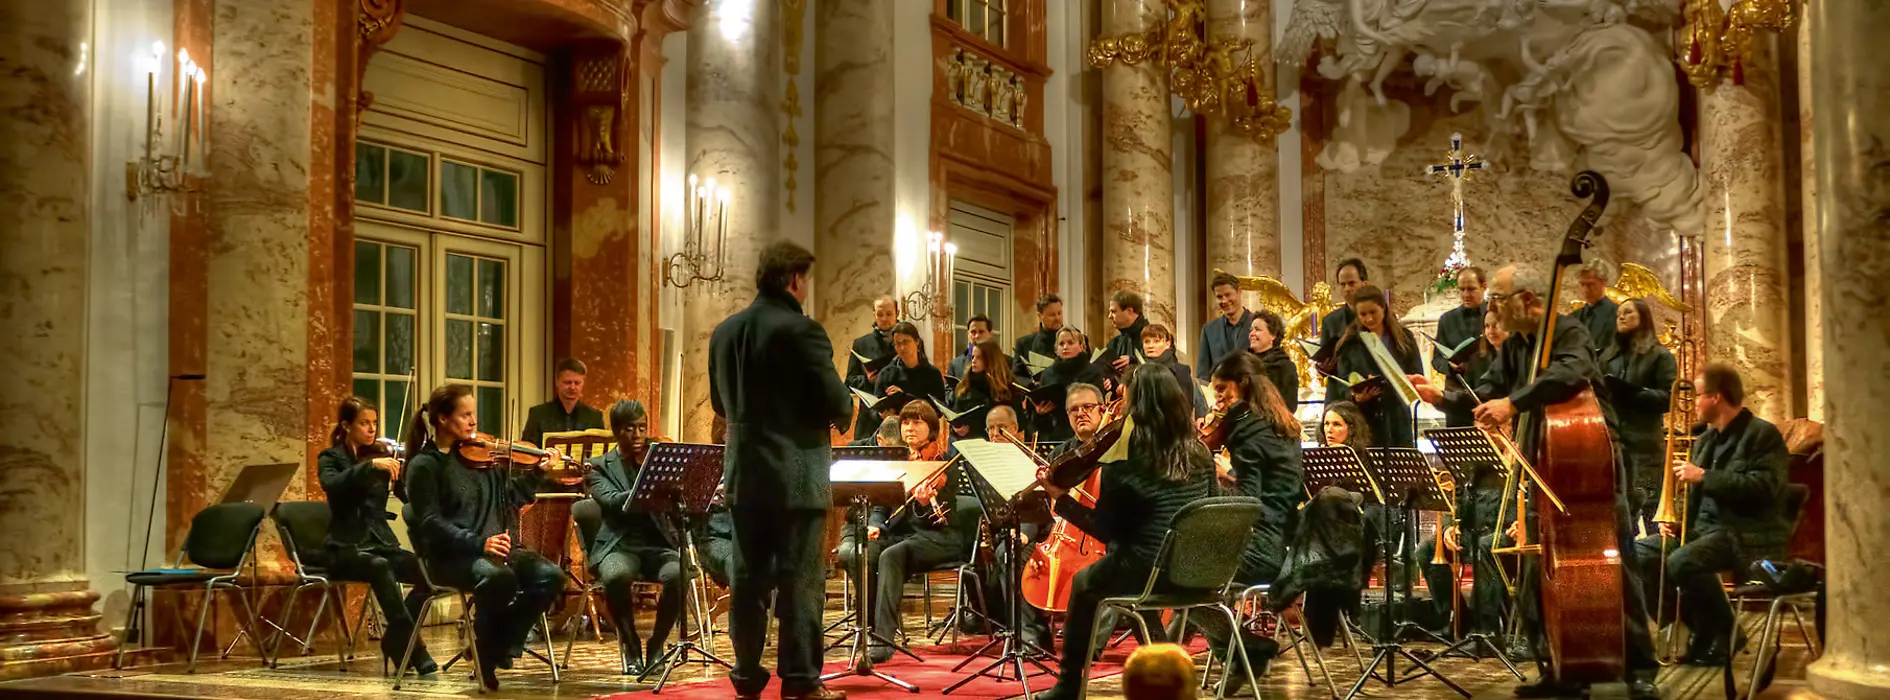 Orquesta en la Iglesia de San Carlos